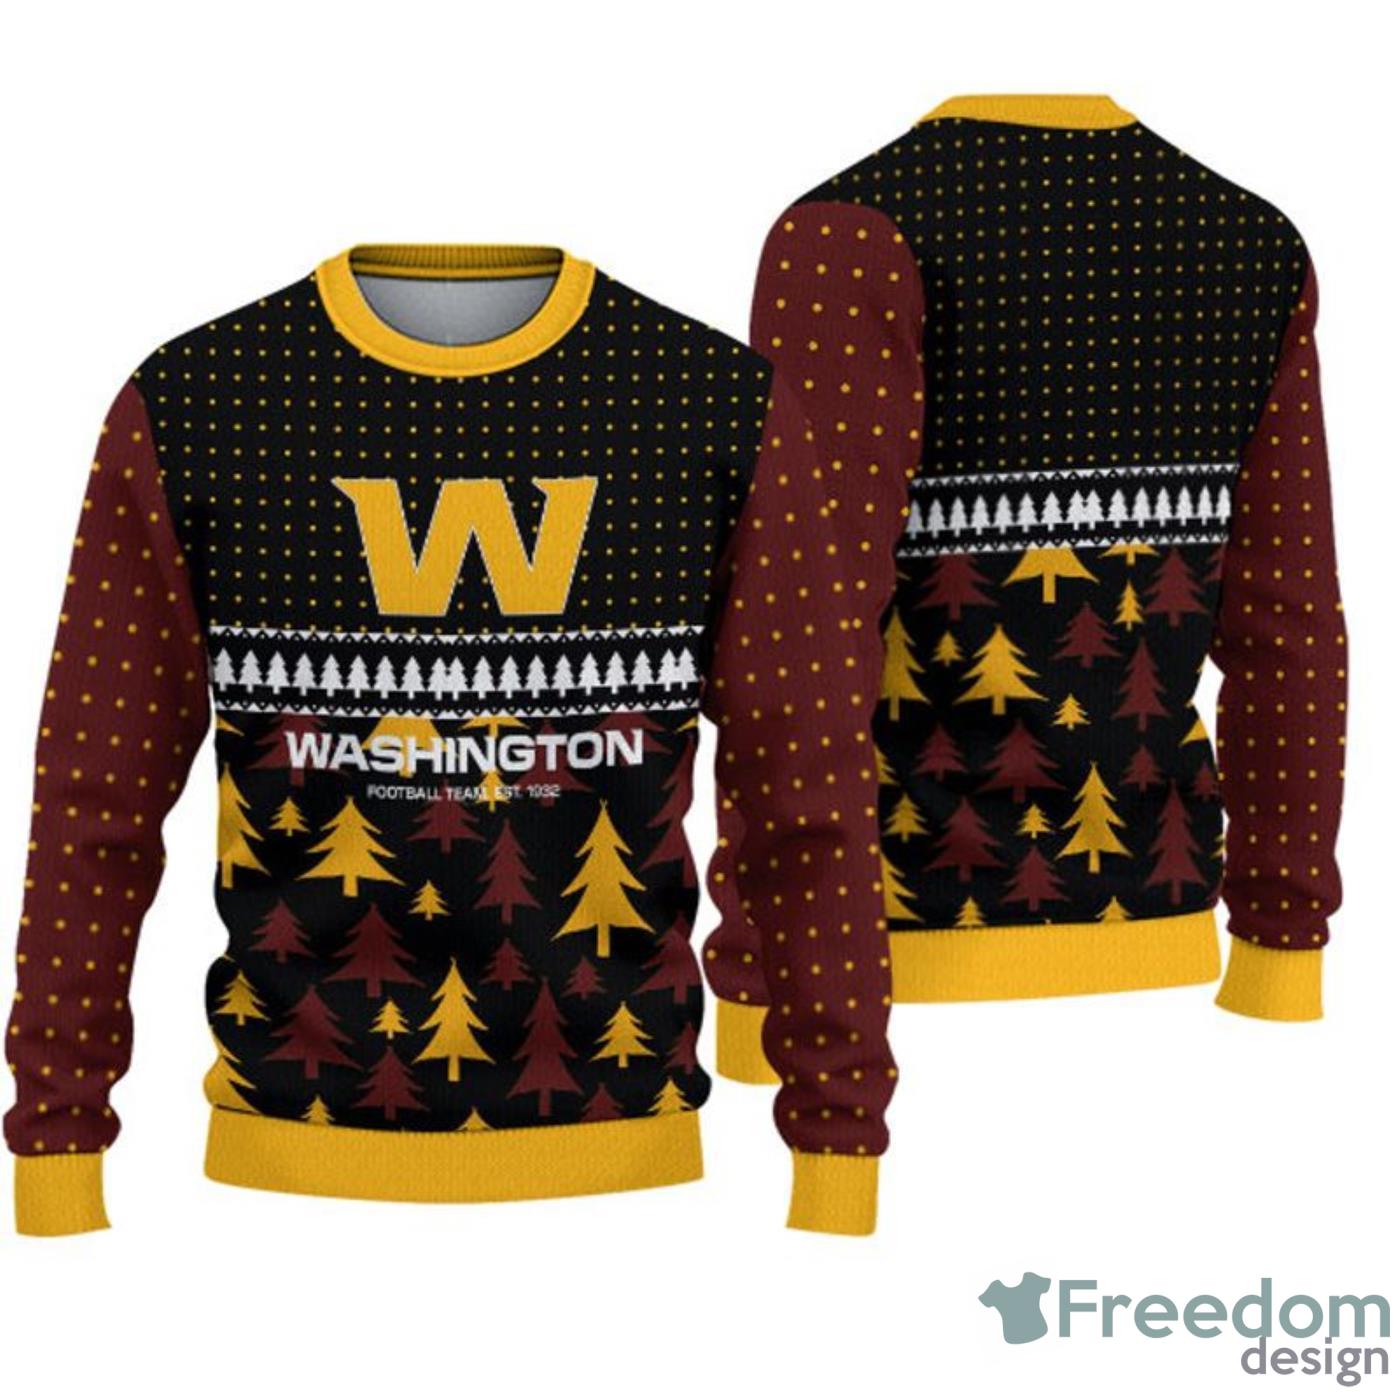 Washington Commanders Cool Christmas Gift Ugly Christmas Sweater -  Freedomdesign